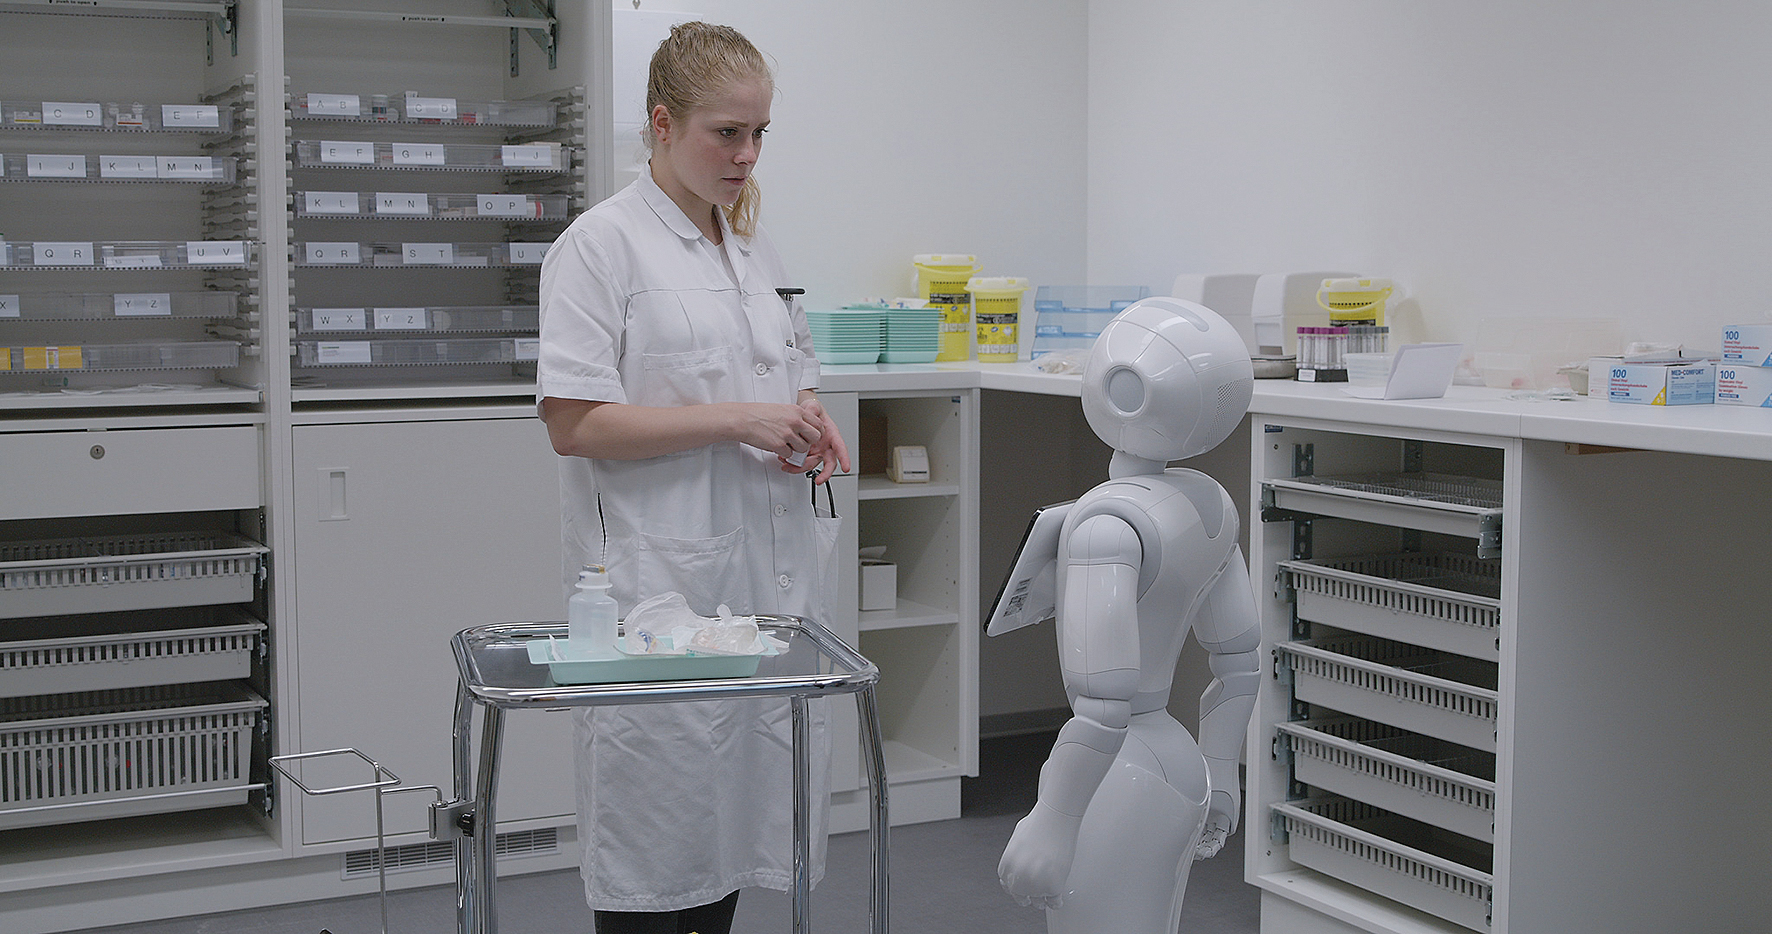 En kvinde i en hvid kittel ser på en robot.